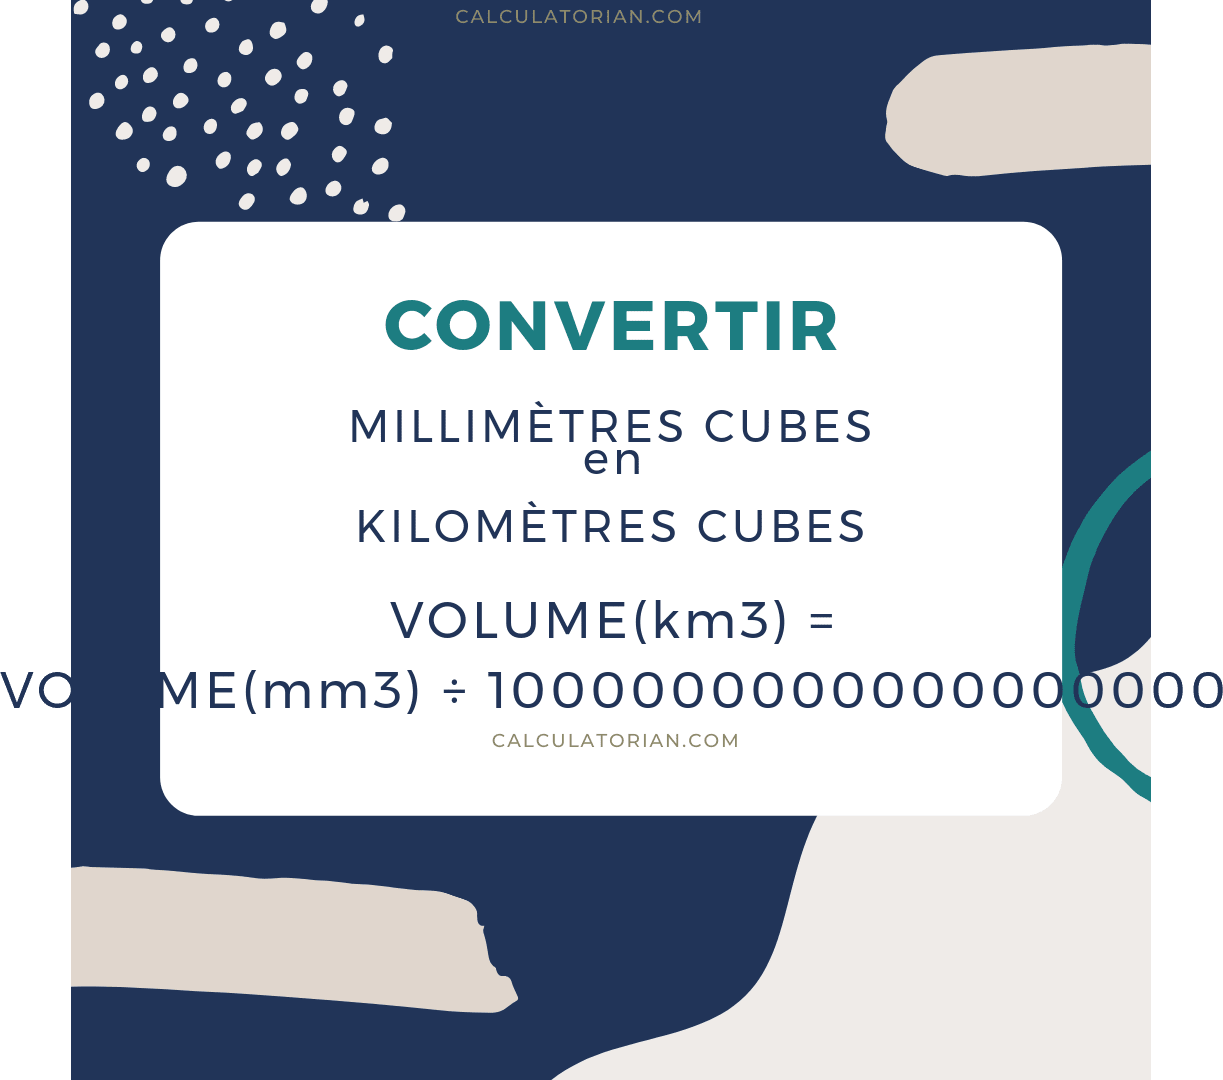 La formule pour convertir un volume de Millimètres cubes à Kilomètres cubes